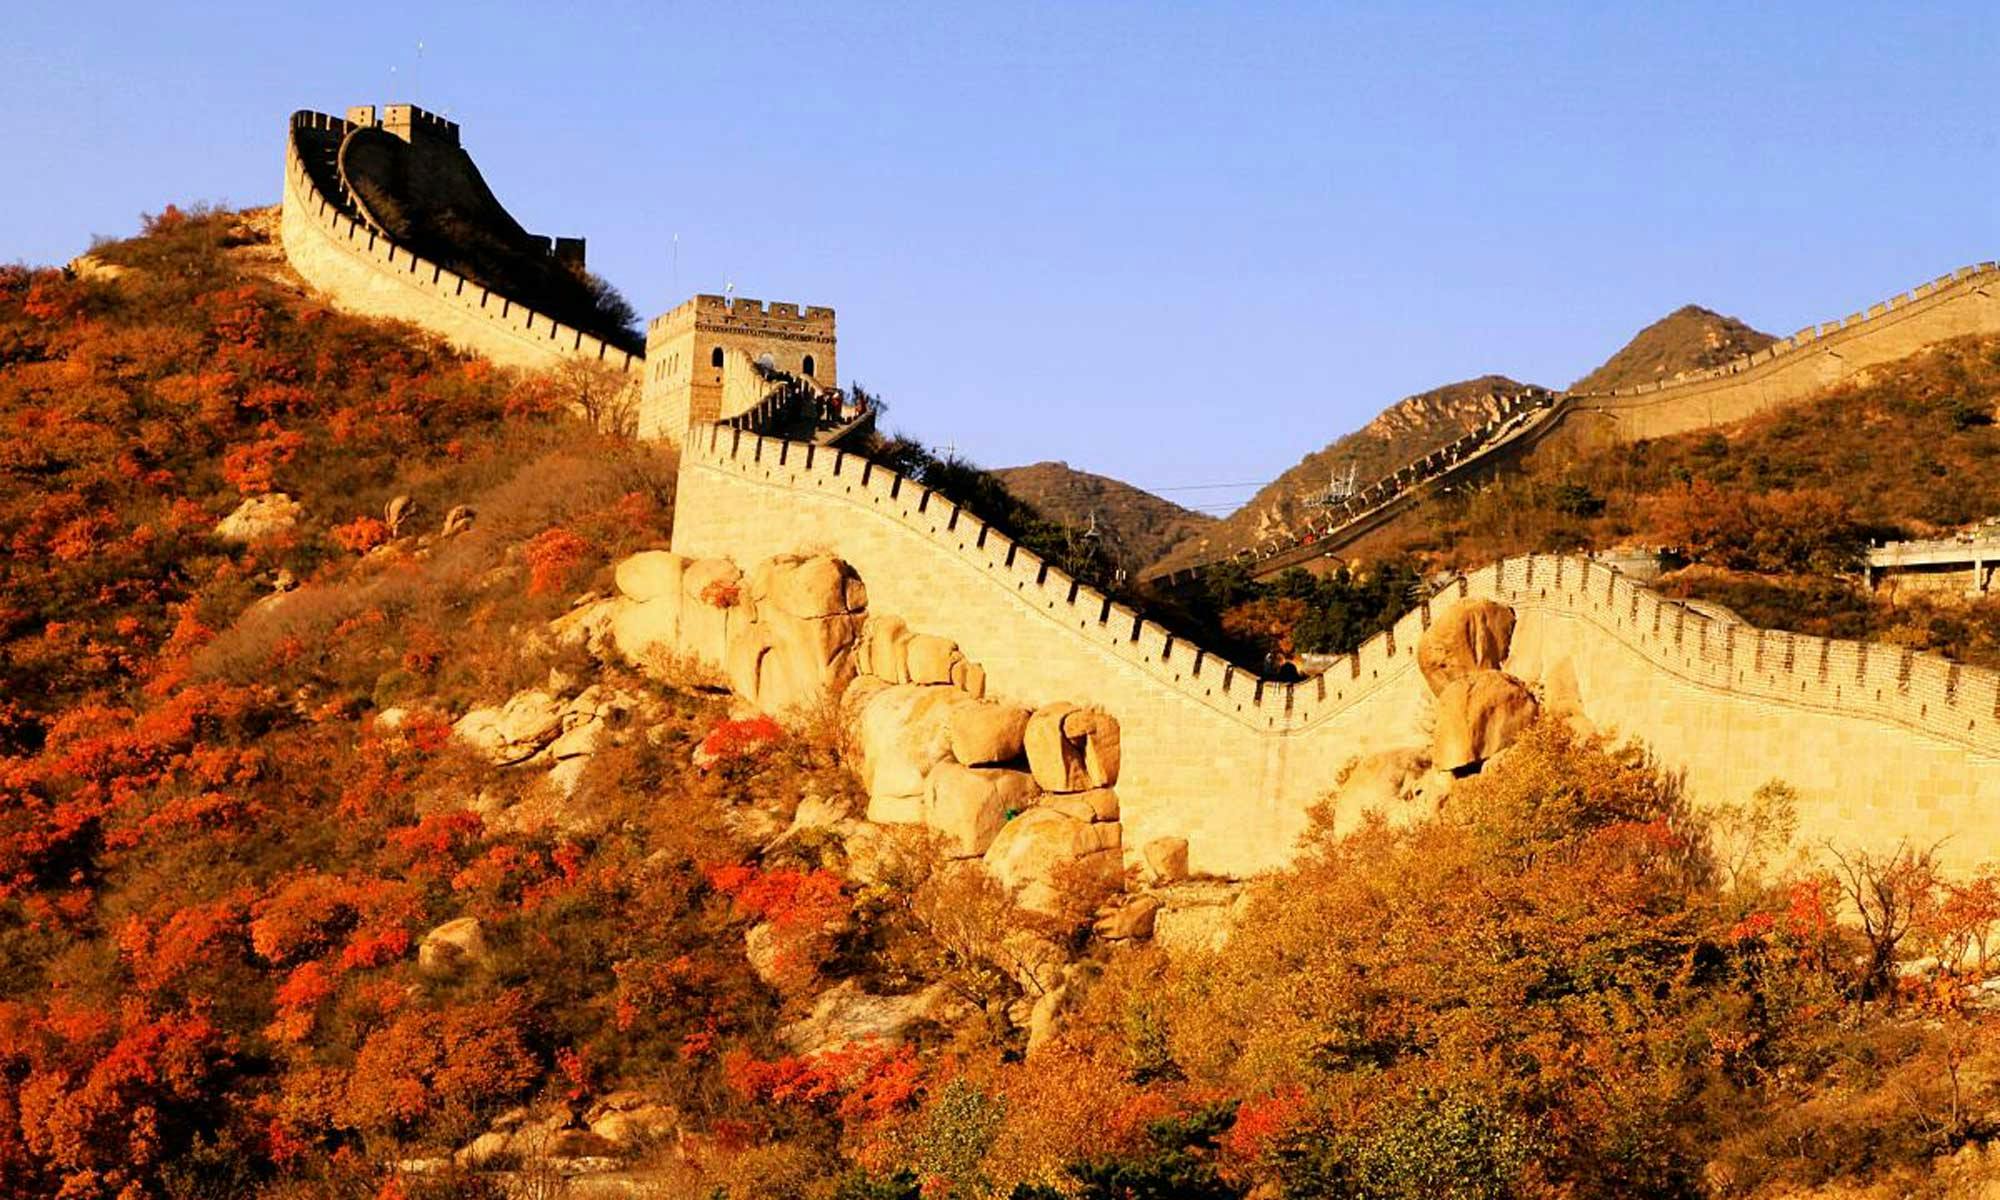 Visite classique tout compris de Pékin de la Grande Muraille de Badaling et des sites personnalisables